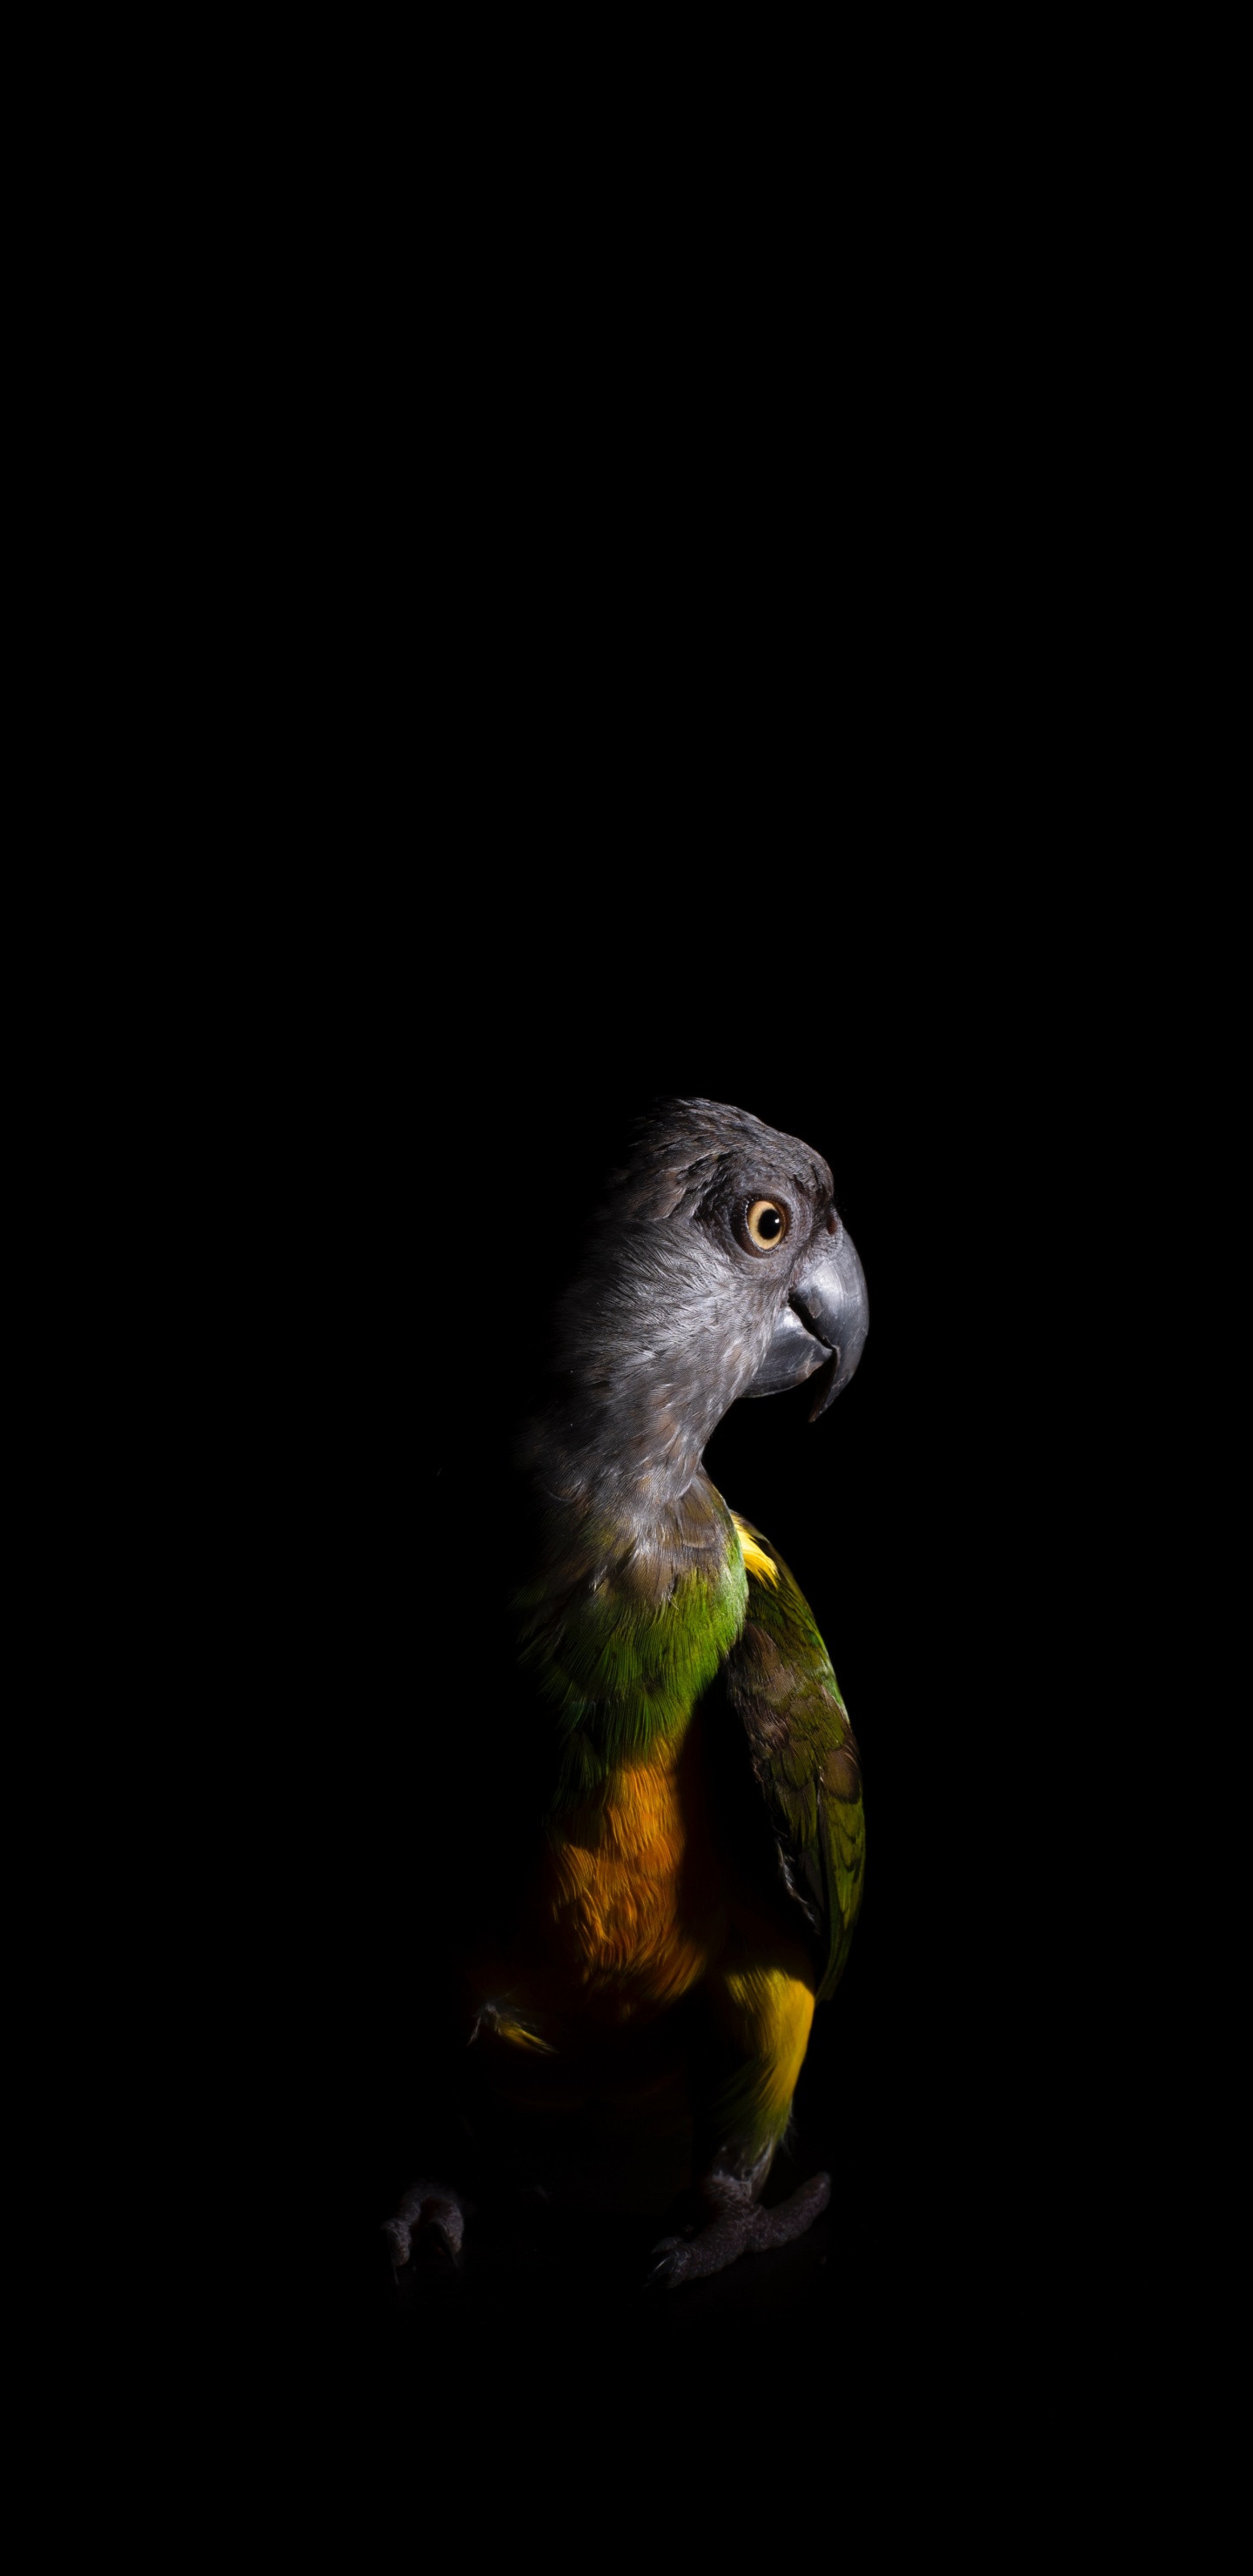 Schwarz-gelbe Vogelillustration. Wallpaper in 1440x2960 Resolution